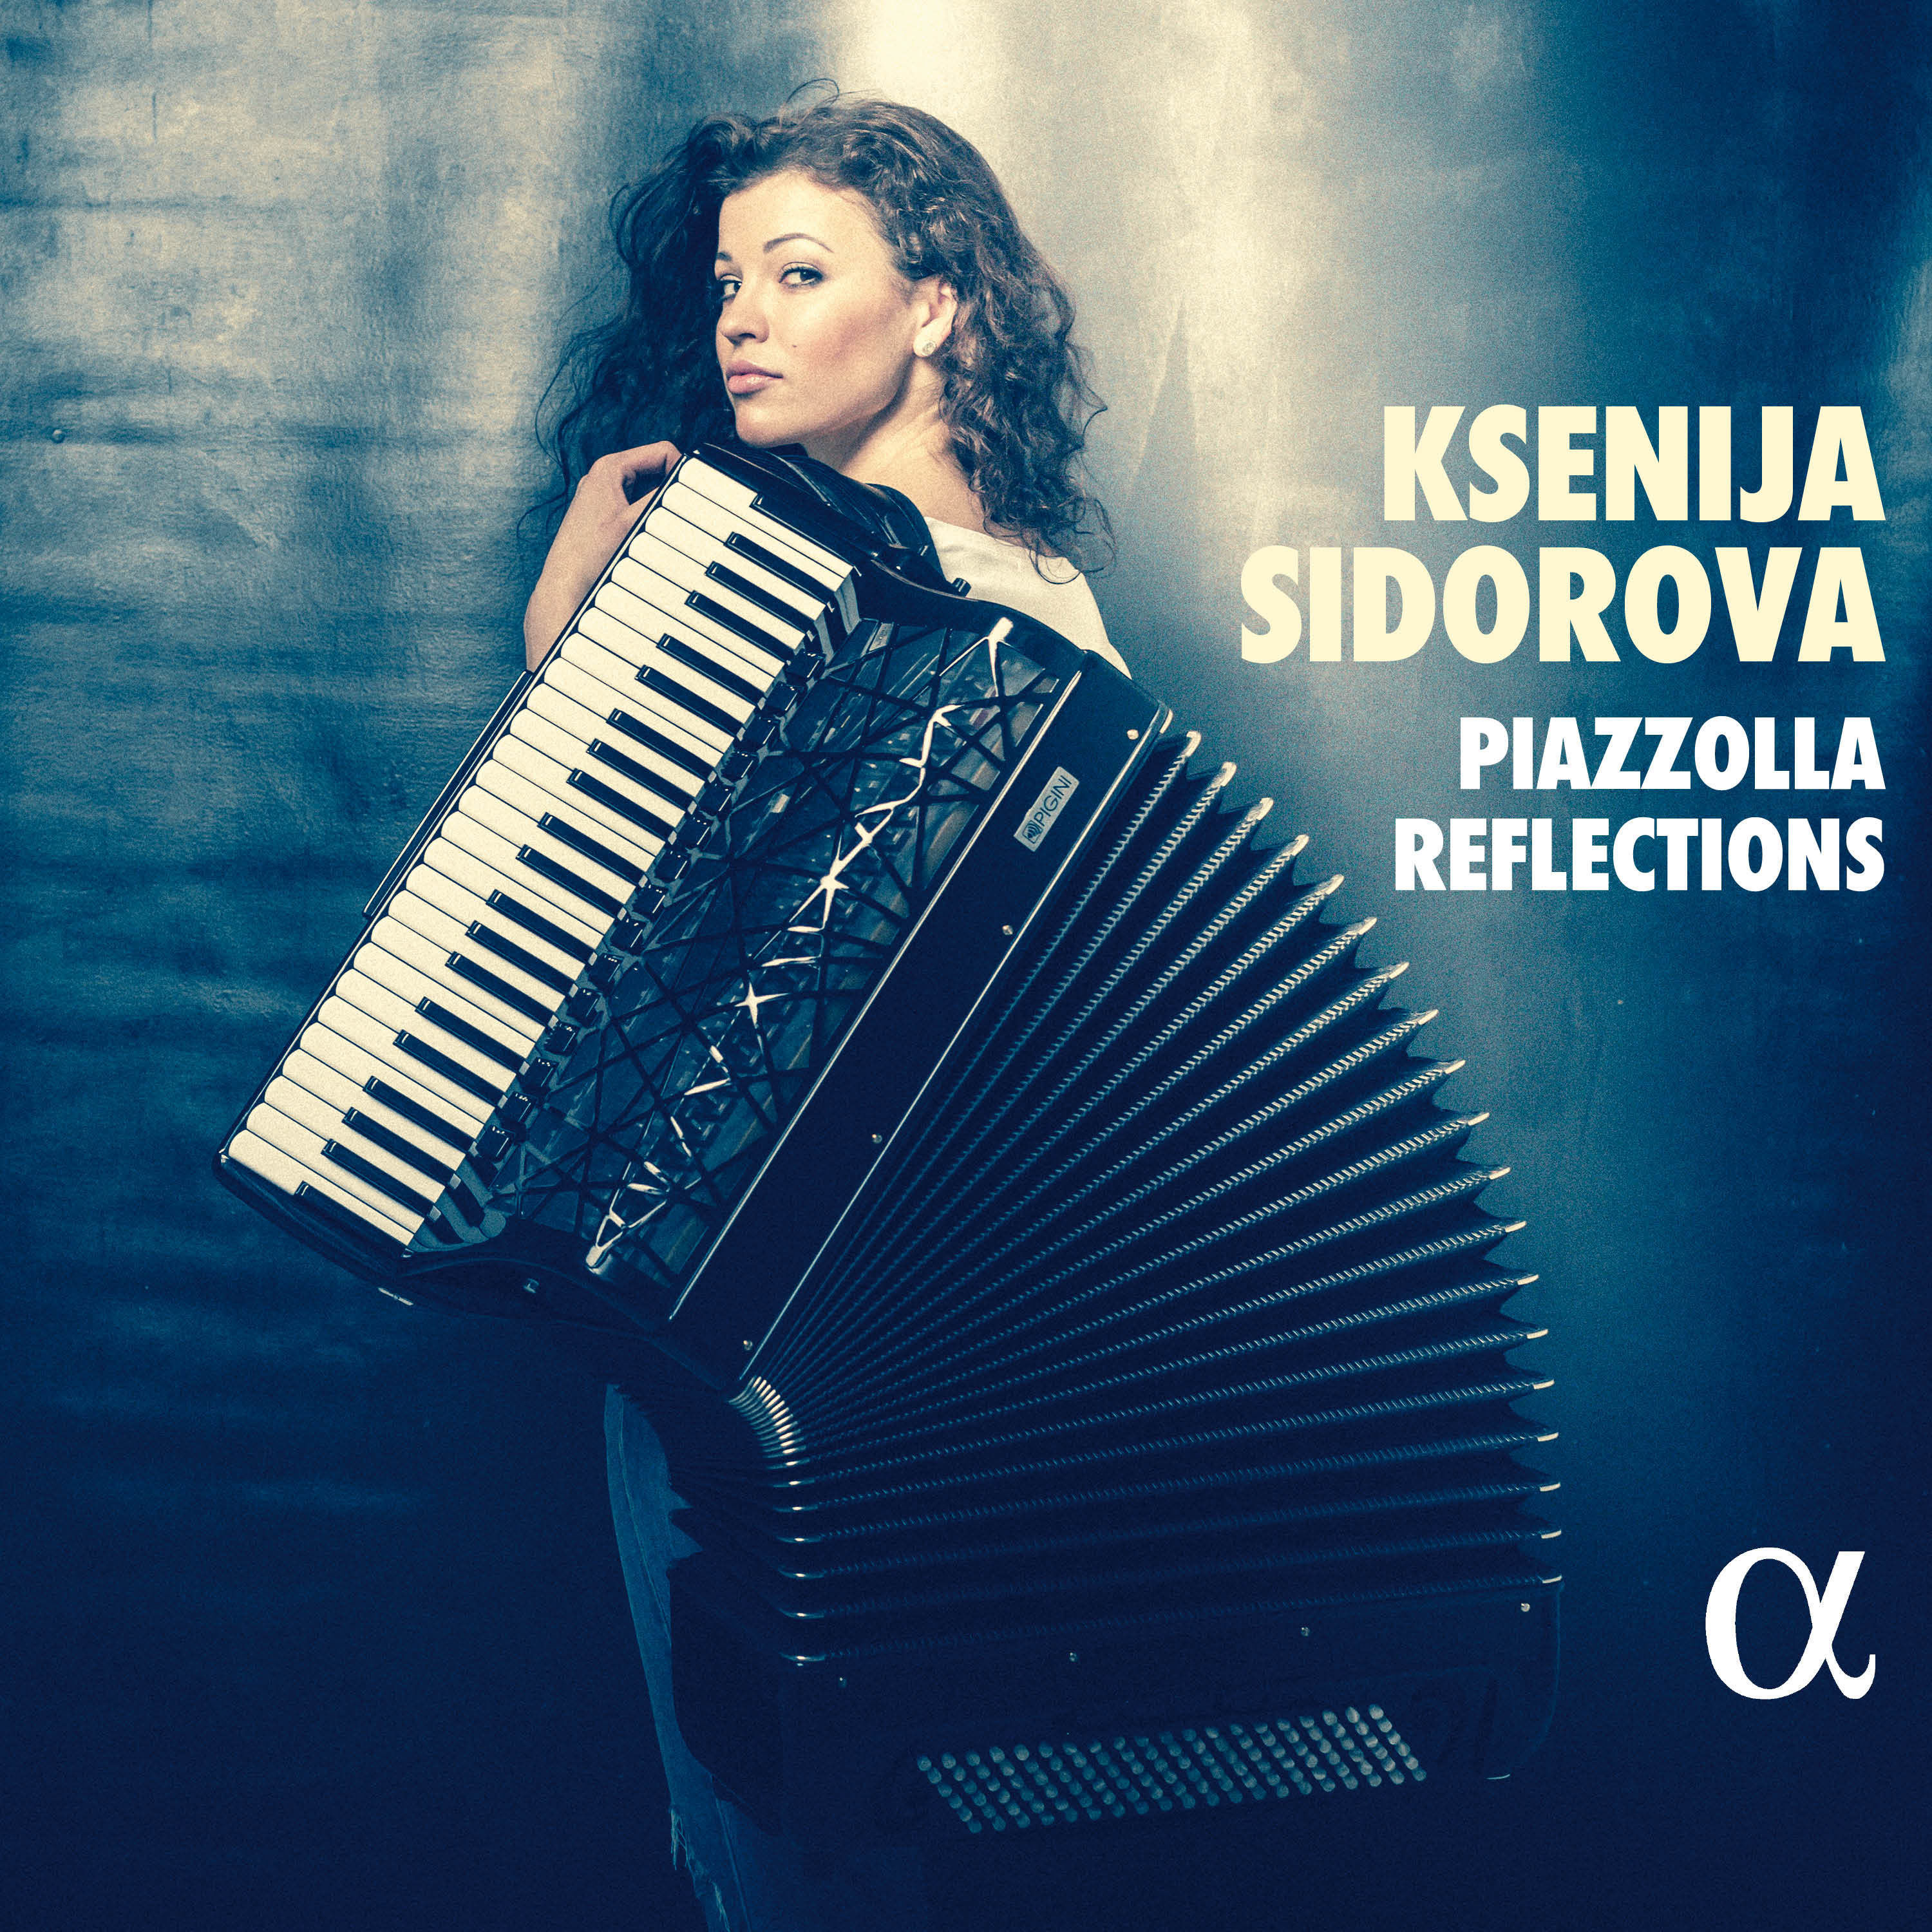 Ksenija Sidorova - Piazzolla Reflections (2021) [FLAC 24bit/96kHz]